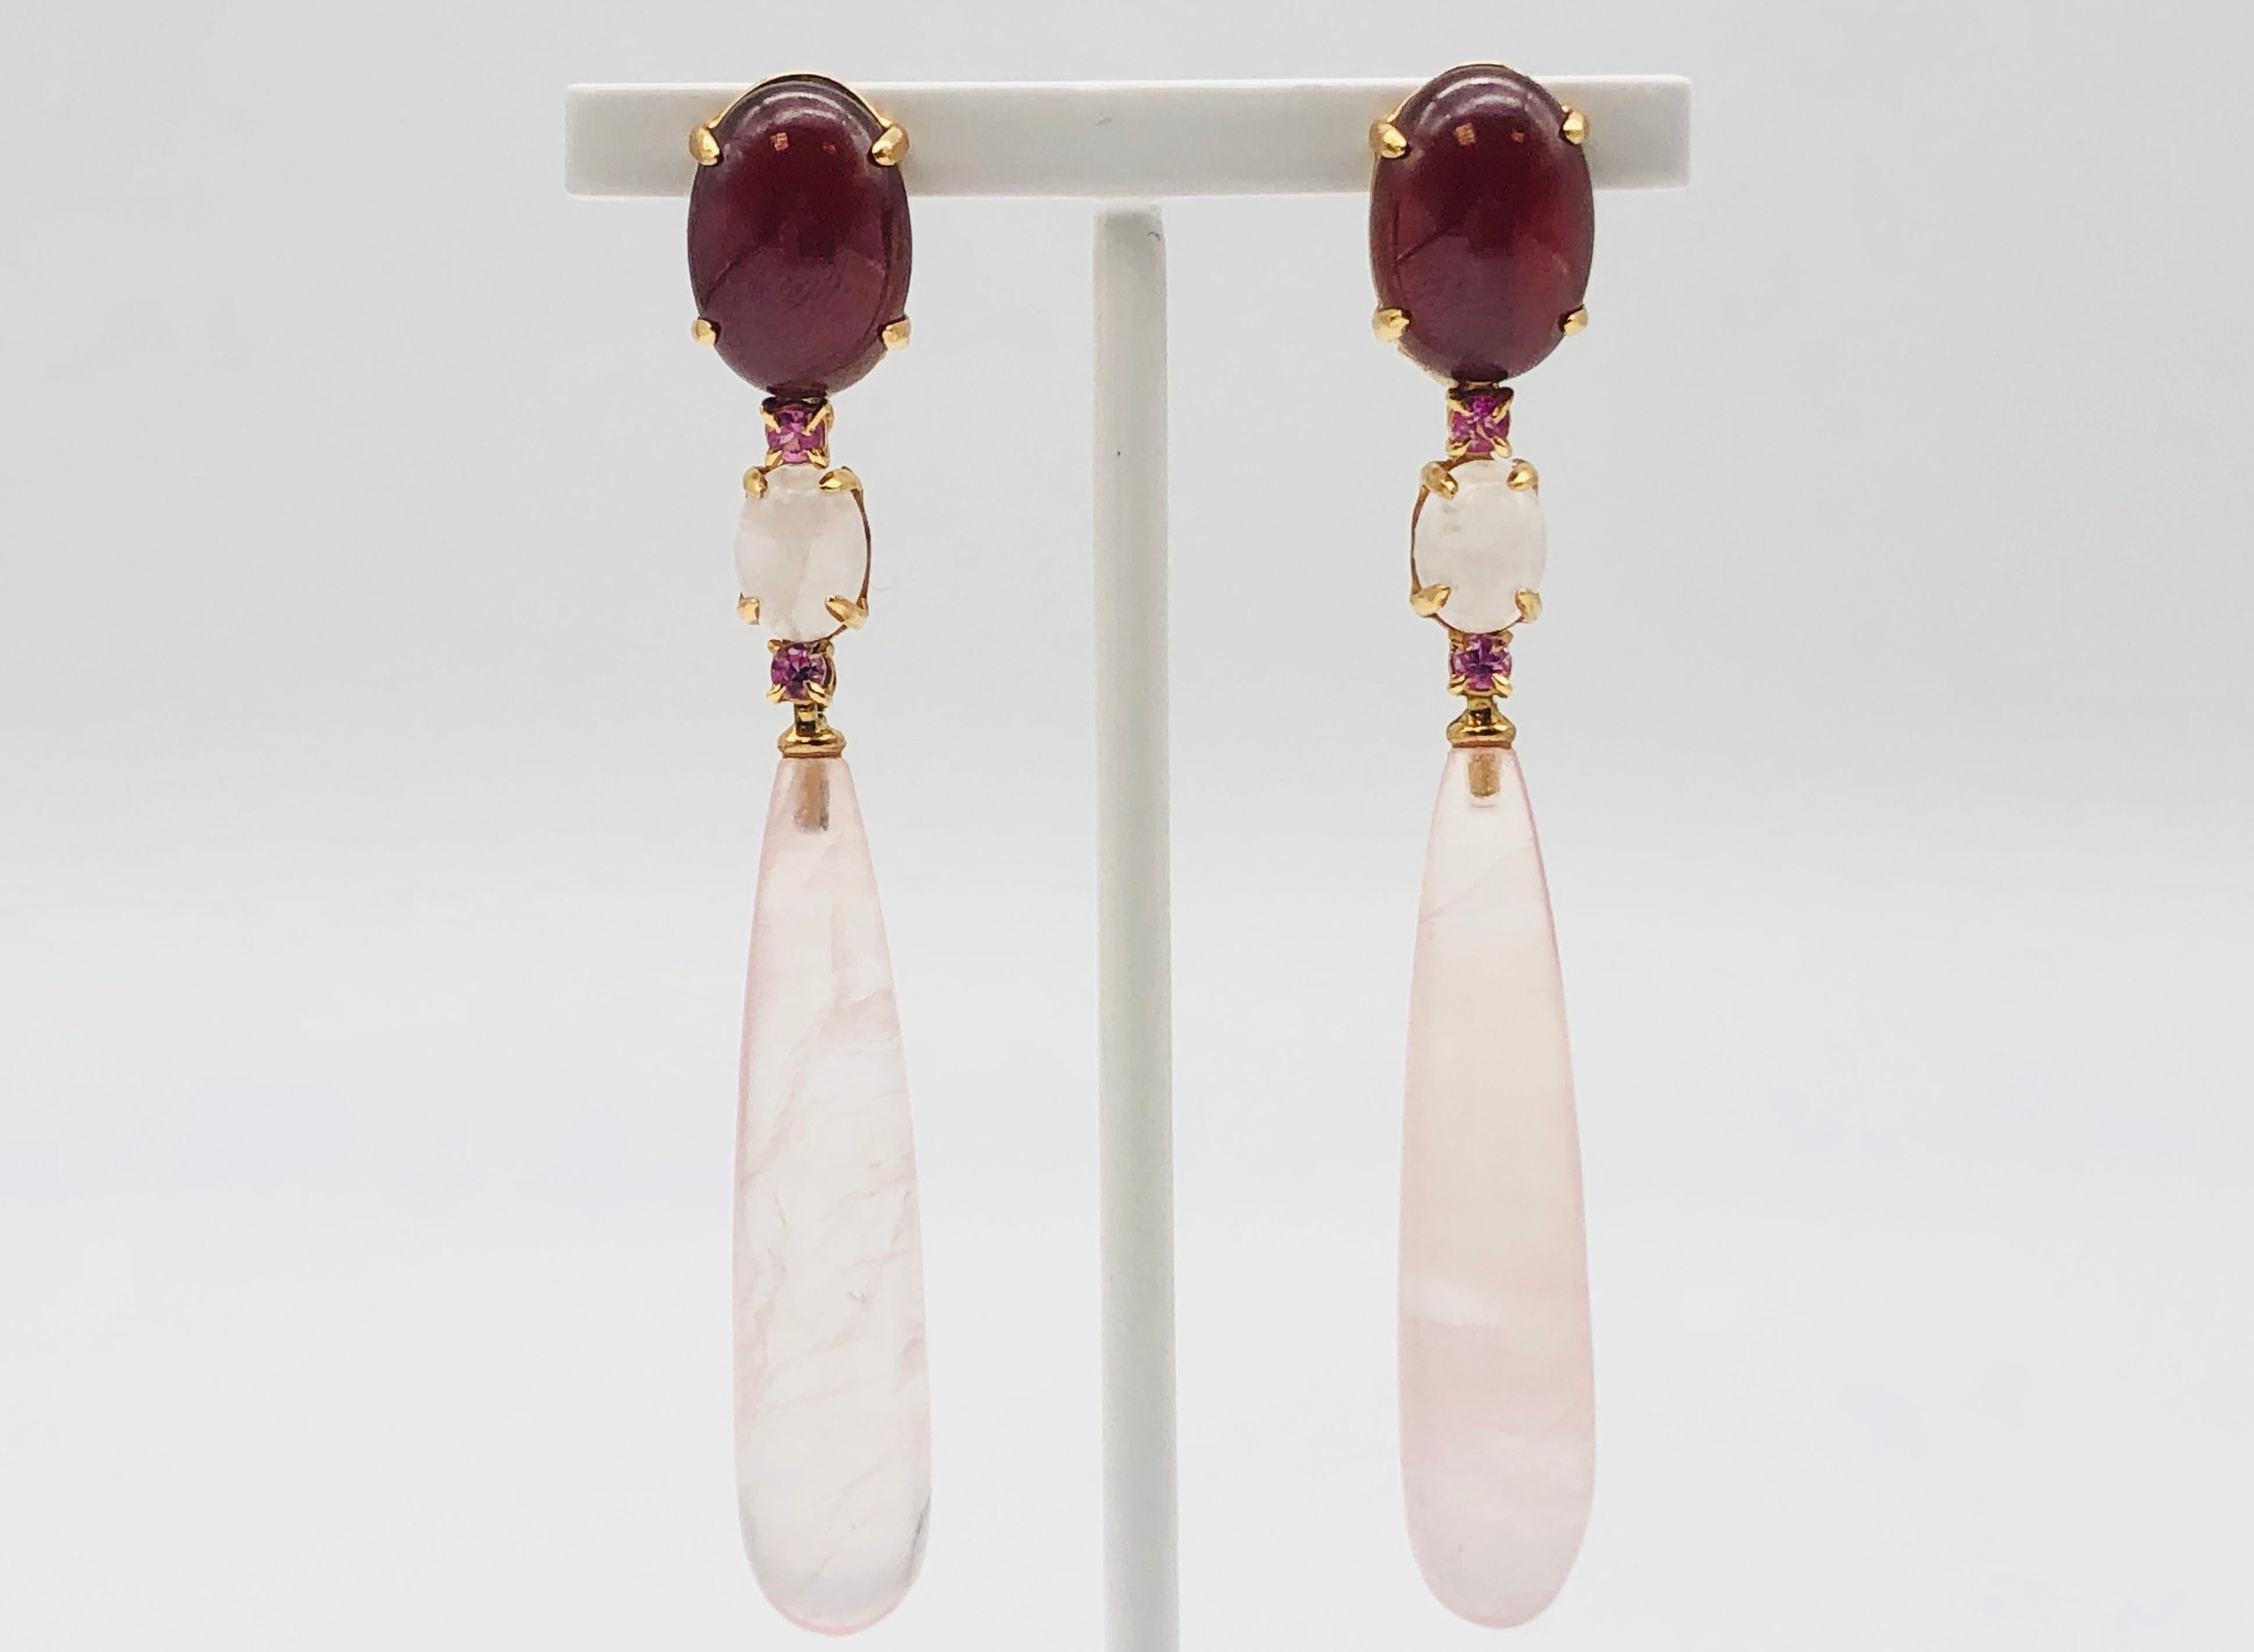 Découvrez ces ravissantes boucles d'oreilles chandelier en or jaune 18 carats, ornées de quartz rose et de topaze rose. Non seulement ils sont d'une beauté enchanteresse, mais ils offrent également un confort exceptionnel grâce à leur légèreté.

Le